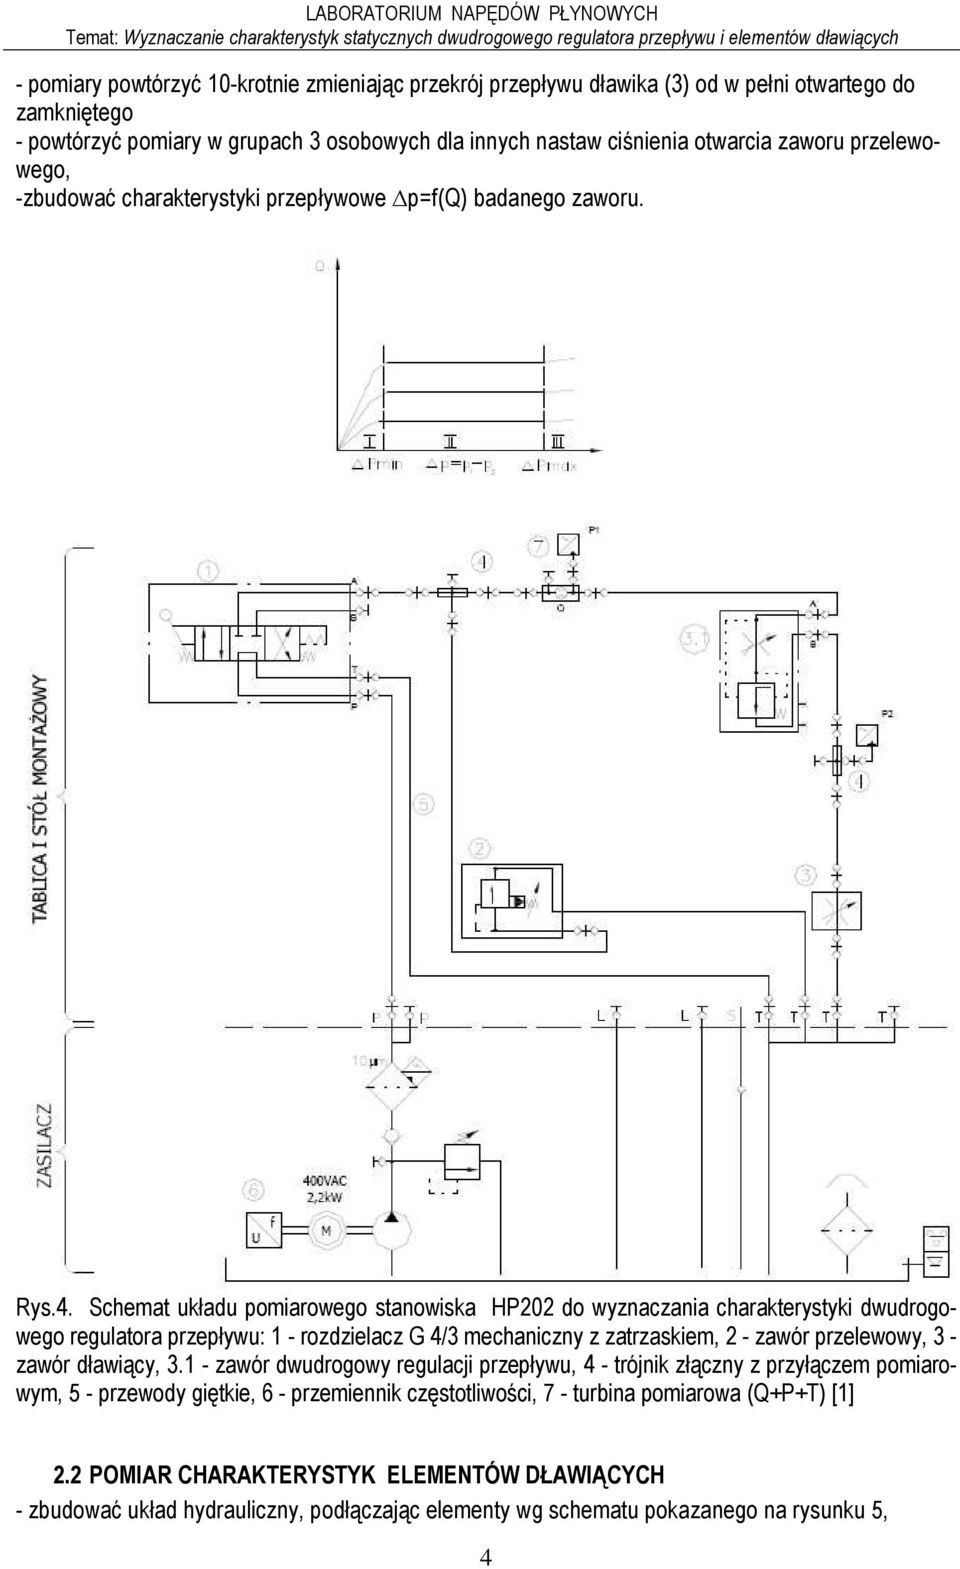 Schemat układu pomiarowego stanowiska HP202 do wyznaczania charakterystyki dwudrogowego regulatora przepływu: 1 - rozdzielacz G 4/3 mechaniczny z zatrzaskiem, 2 - zawór przelewowy, 3 - zawór